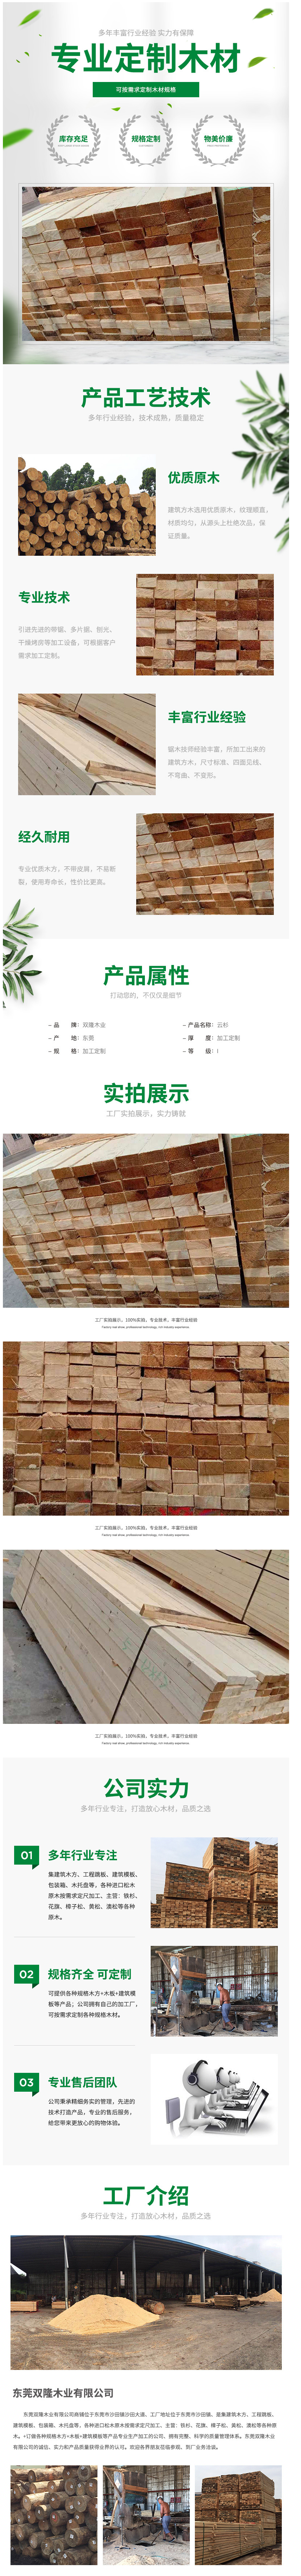 厂家直销 云杉木方 松木条 各规格按需加工 工程方木 床板料-阿里巴巴.png